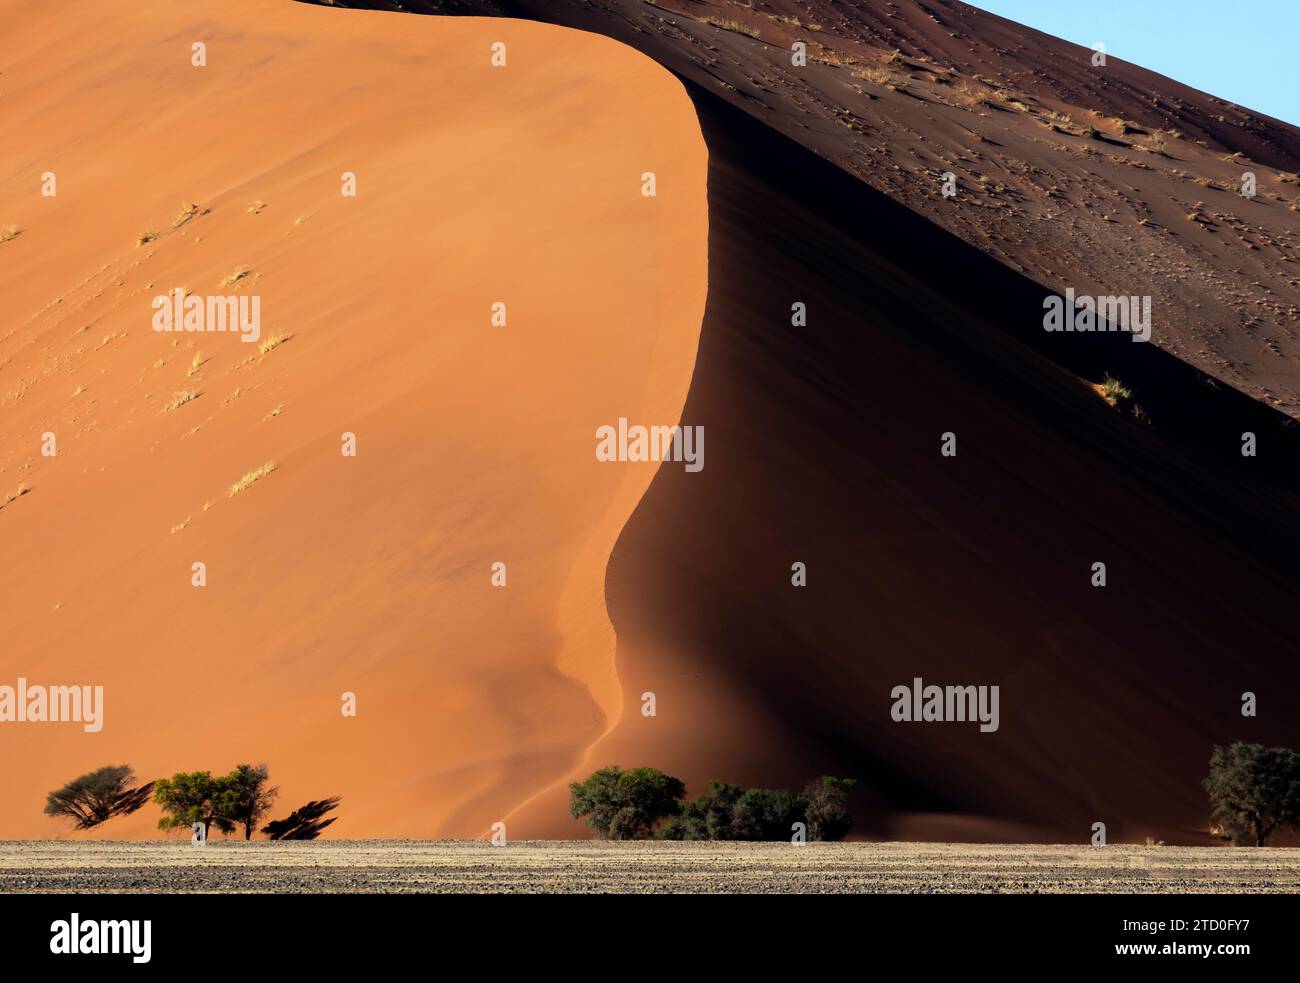 Majestätische Aussicht, die den starken Kontrast zwischen den hohen Sanddünen und den widerstandsfähigen Bäumen an ihrer Basis in der namibischen Wüste unter klarem SK festmacht Stockfoto